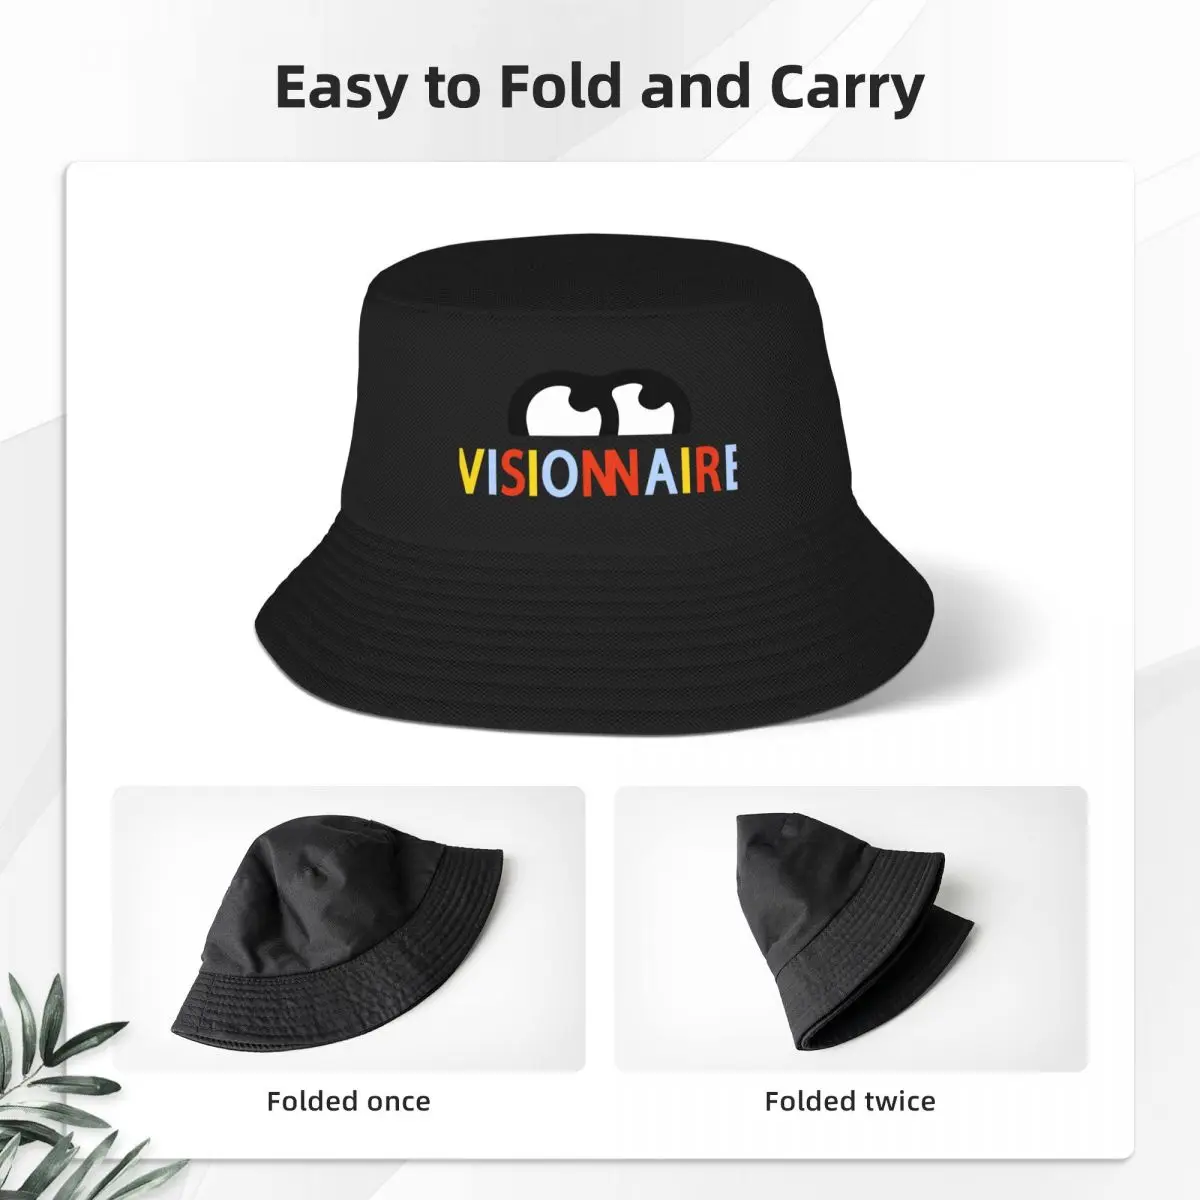 Новая женская кепка BIGFLO et OLI - VISIONNAIRE в винтажном стиле Sunhat Rave Boy. Изображение 2